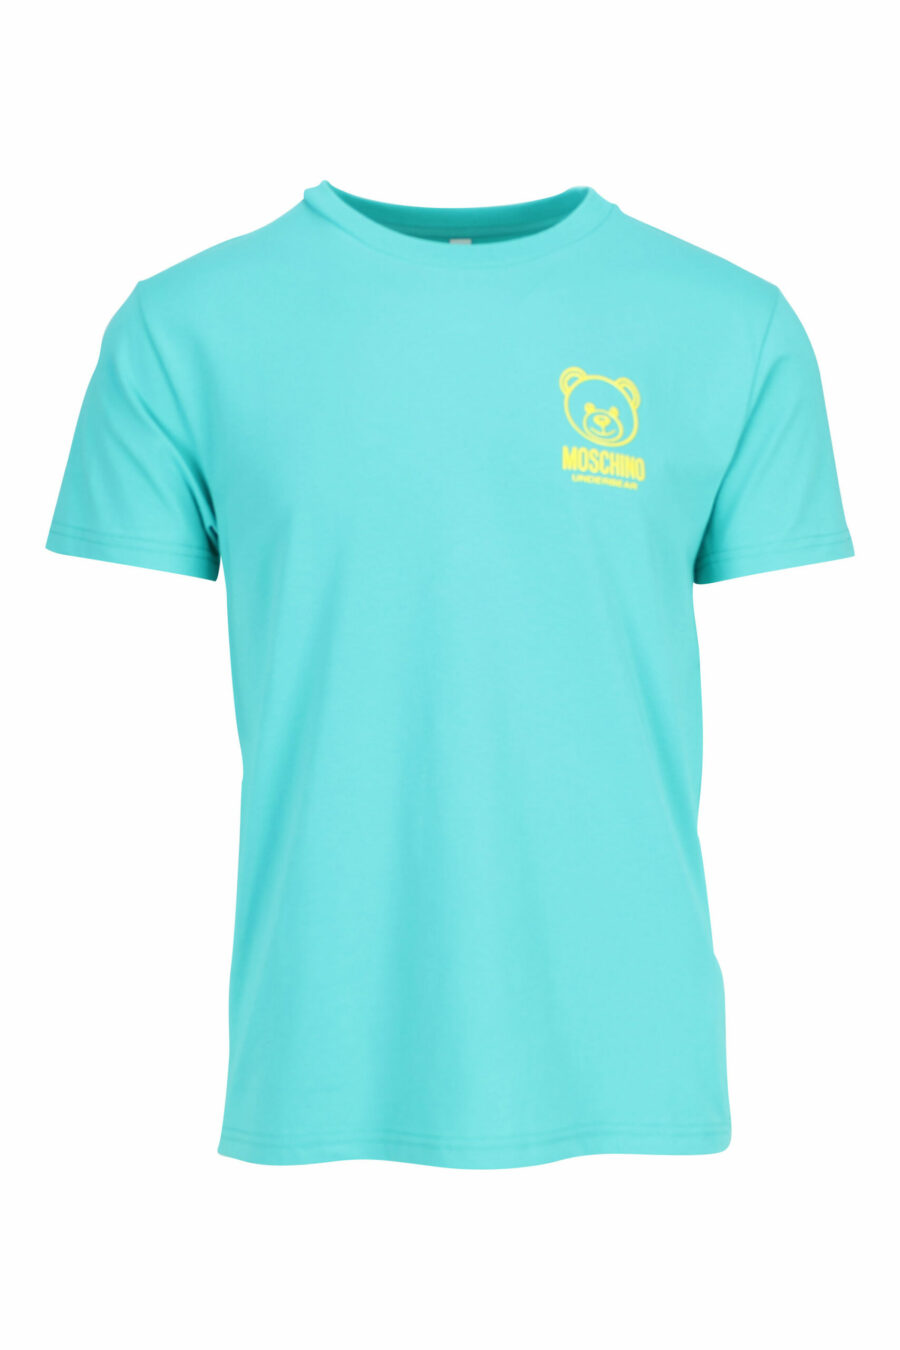 mintgrünes T-Shirt mit Minilogo-Bär "underbear" in gelbem Gummi - 667113602684 skaliert